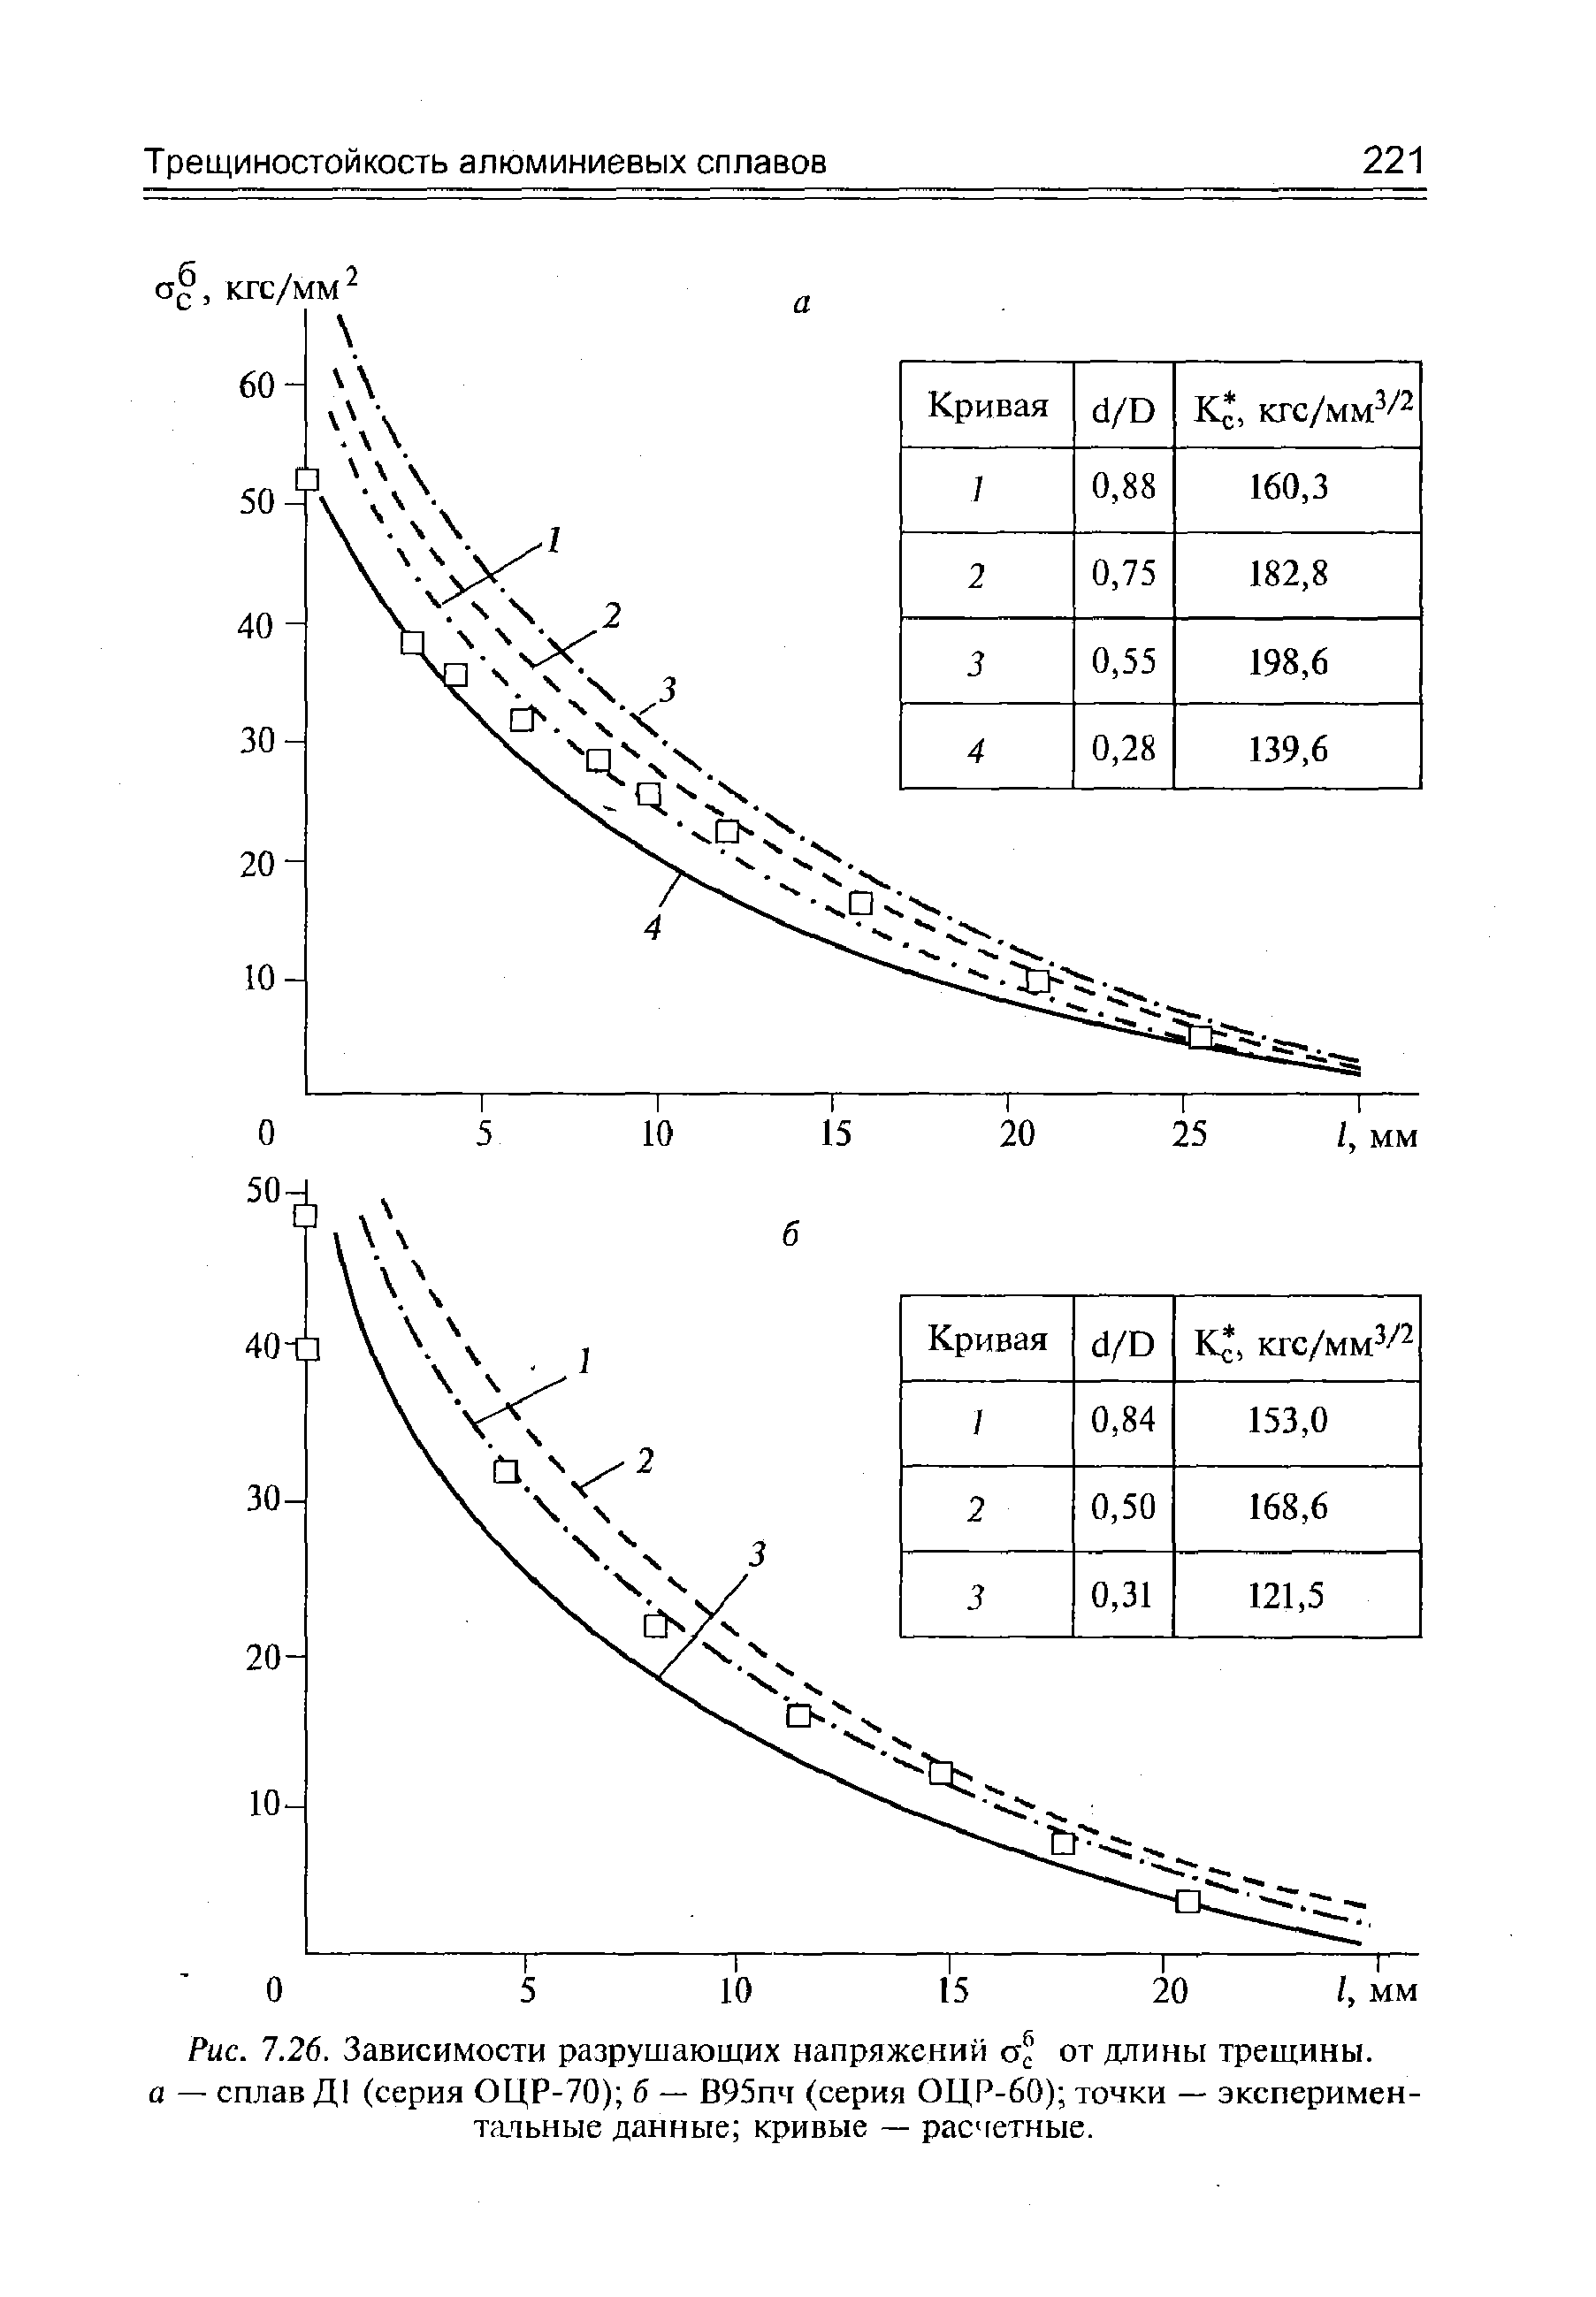 Рис. 7.26. Зависимости разрушающих напряжений от <a href="/info/223209">длины трещины</a>. а — сплав Д1 (серия ОЦР-70) б — В95пч (серия ОЦР-60) точки — экспериментальные данные кривые — расчетные.
